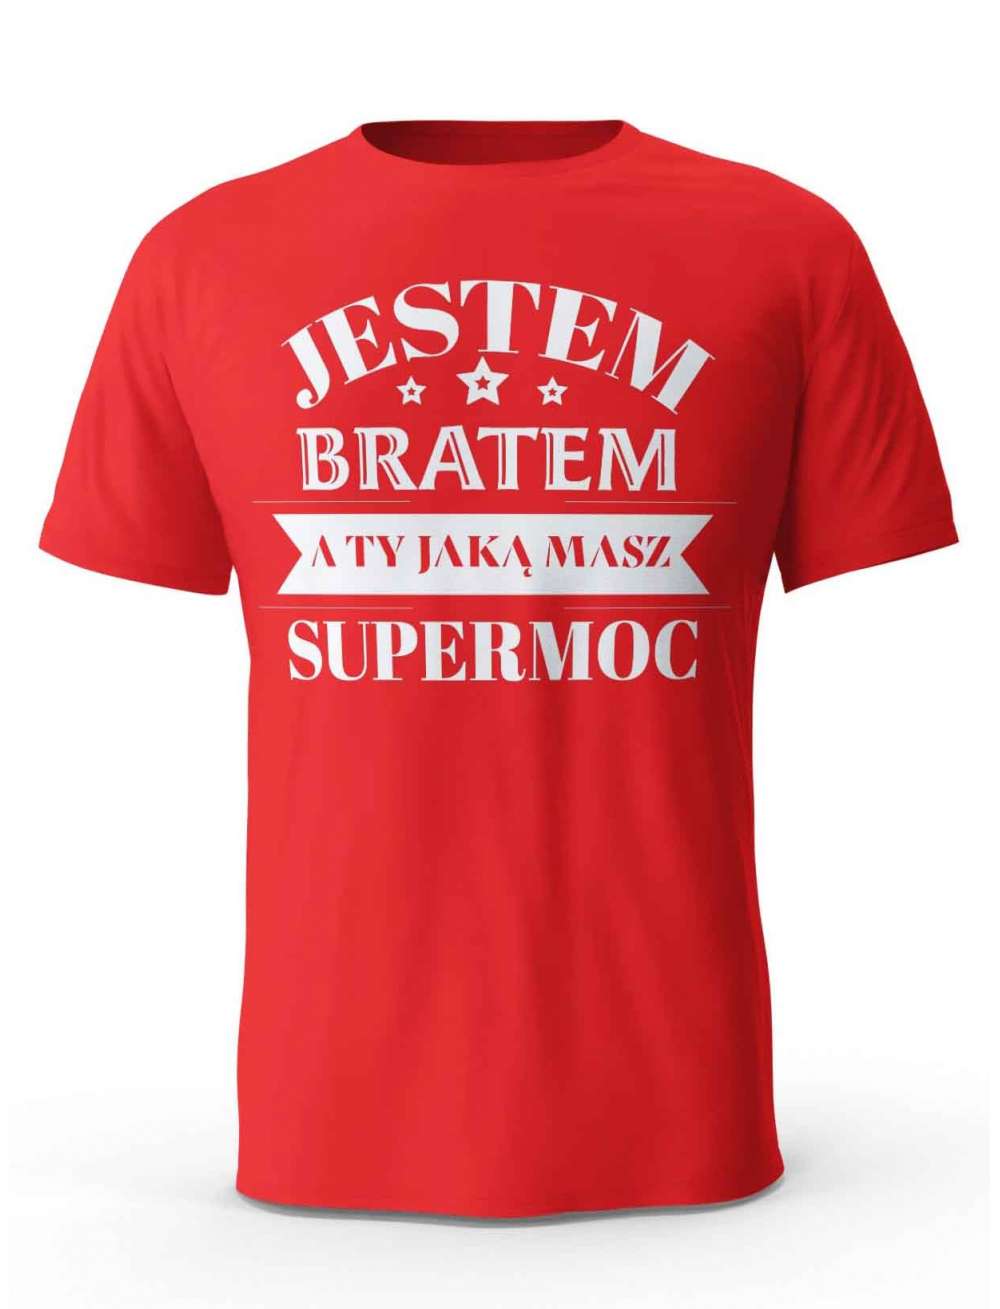 Koszulka Jestem Bratem a Ty Jaką masz Supermoc, T-shirt dla Brata